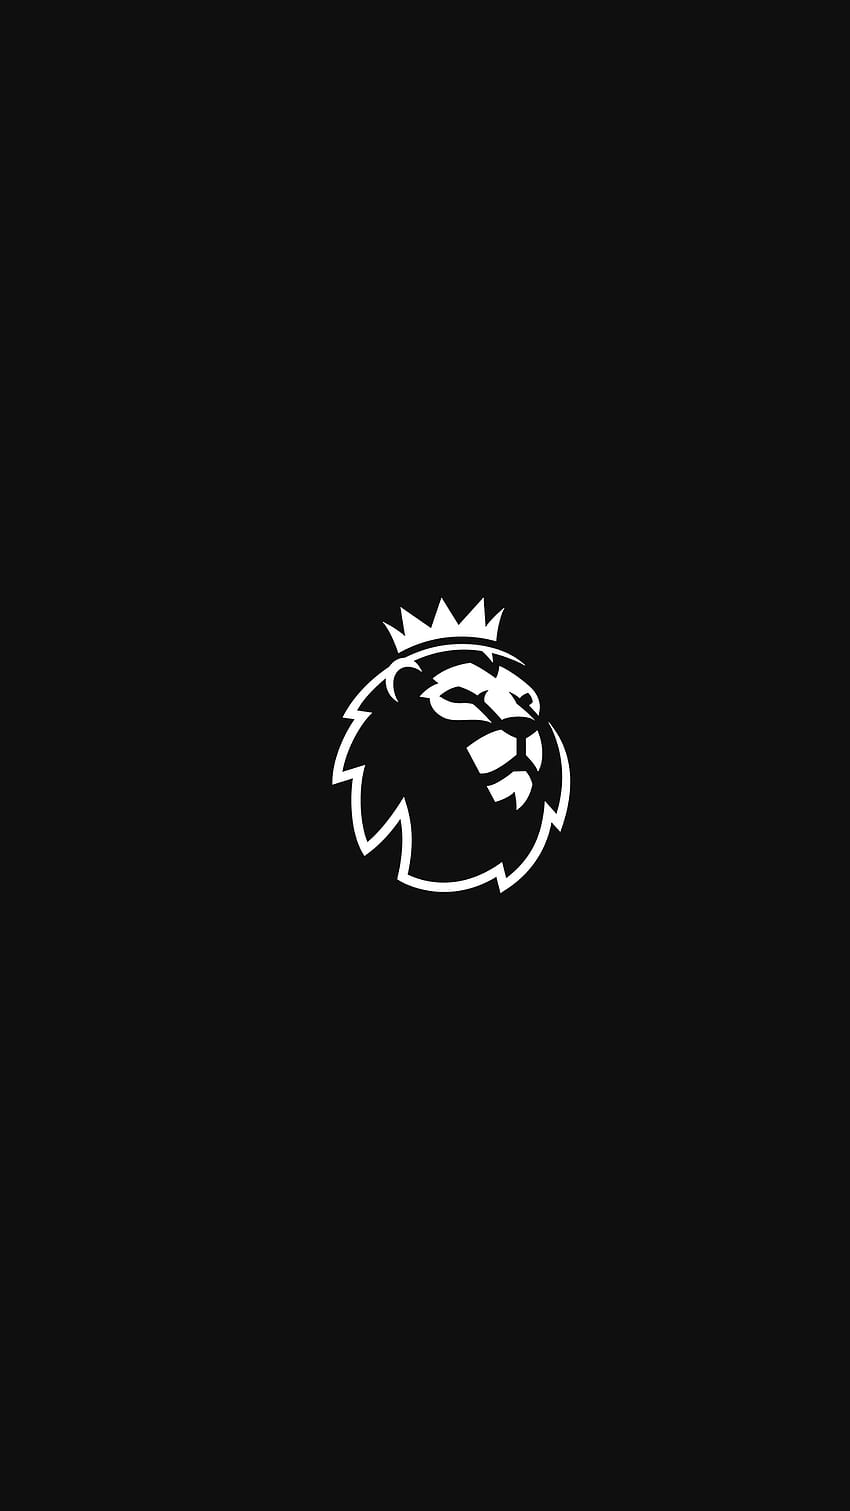 Logo Premier League Minimalis wallpaper ponsel HD